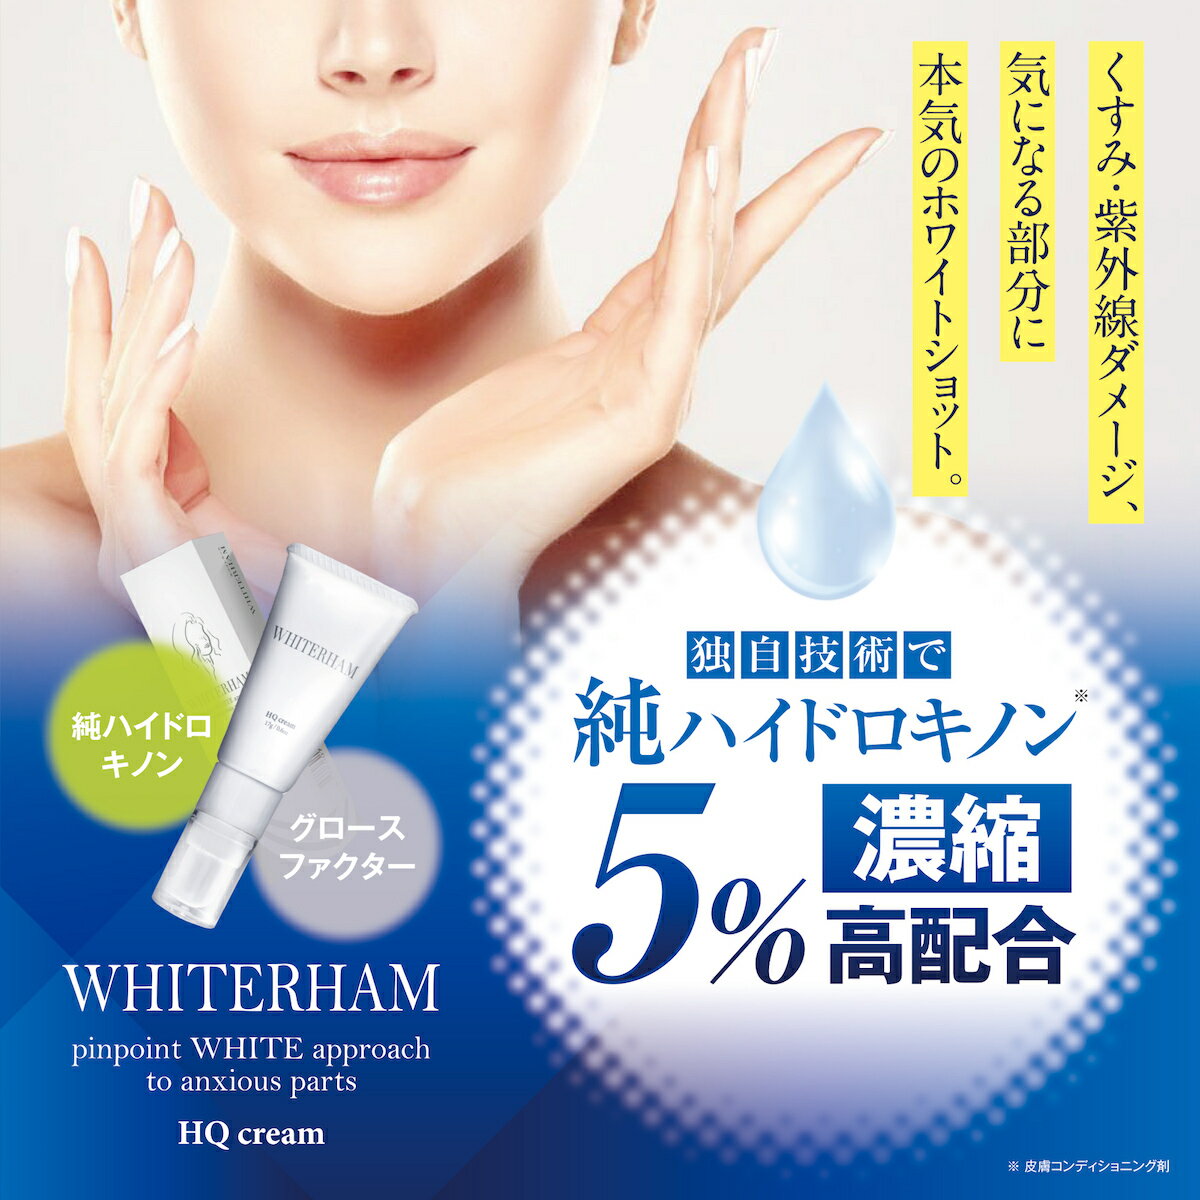 ホワイトラーム ハイドロキノン クリーム ハイドロキノン5% EGF フェイスクリーム 高濃度 日本製 15g